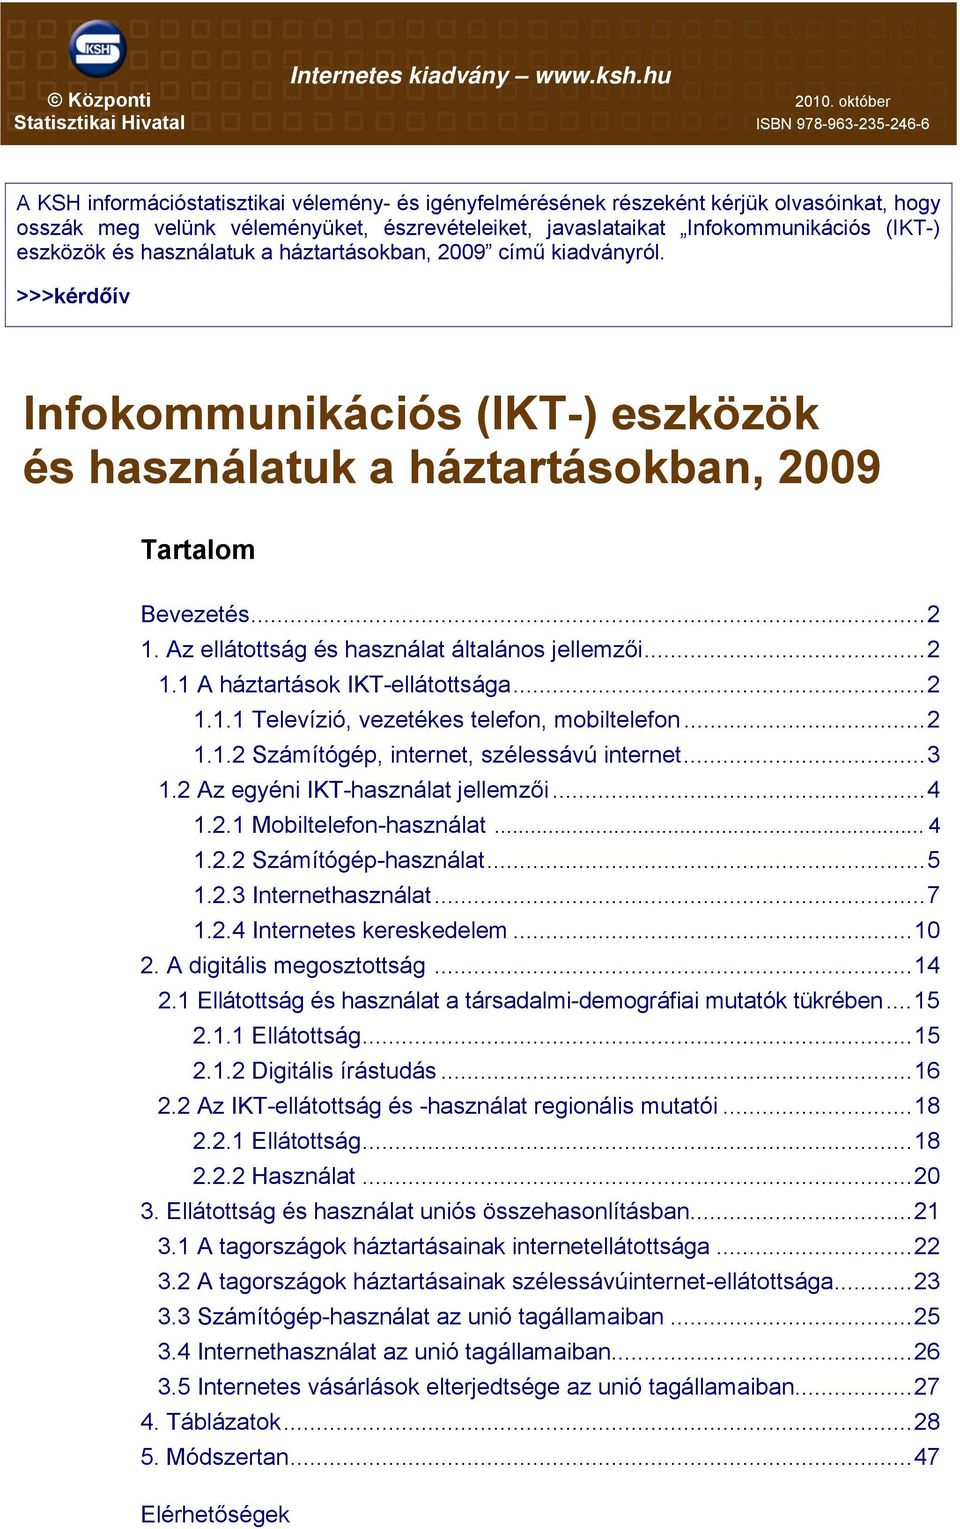 javaslataikat Infokommunikációs (IKT-) eszközök és használatuk a háztartásokban, 2009 című kiadványról.